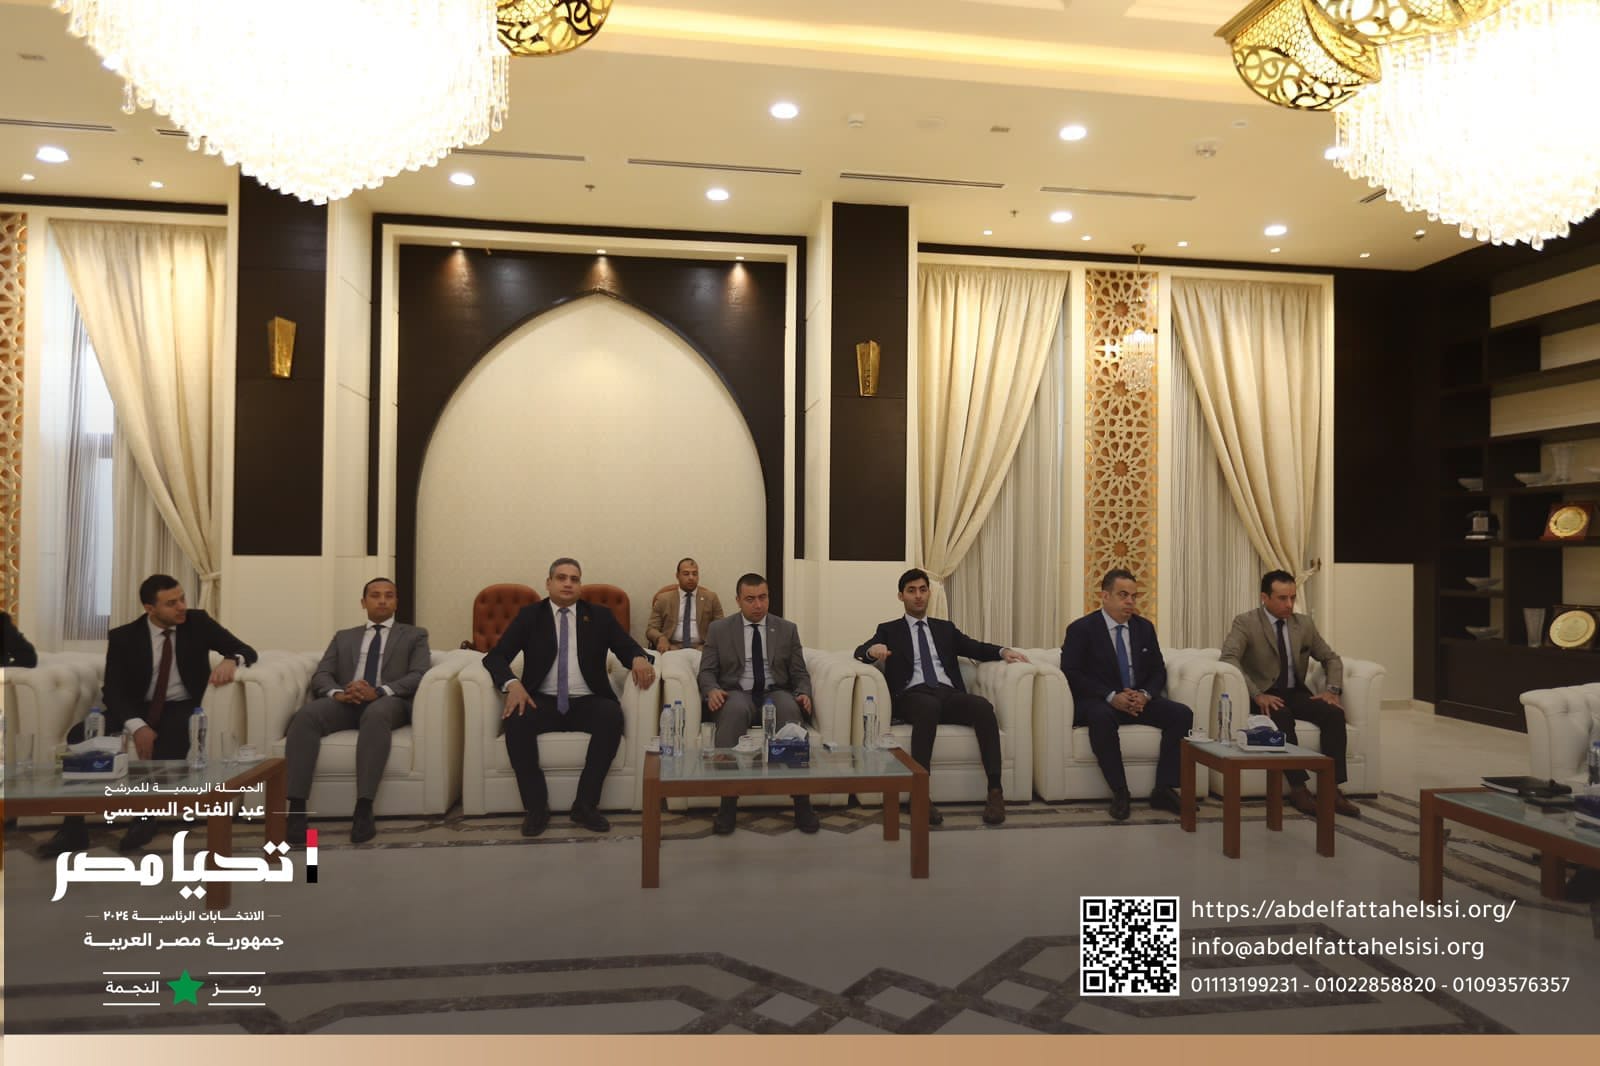 الحملة الرسمية للمرشح الرئاسي عبد الفتاح السيسي تلتقي المفتي الدكتور شوقي علام بدار الإفتاء (9)